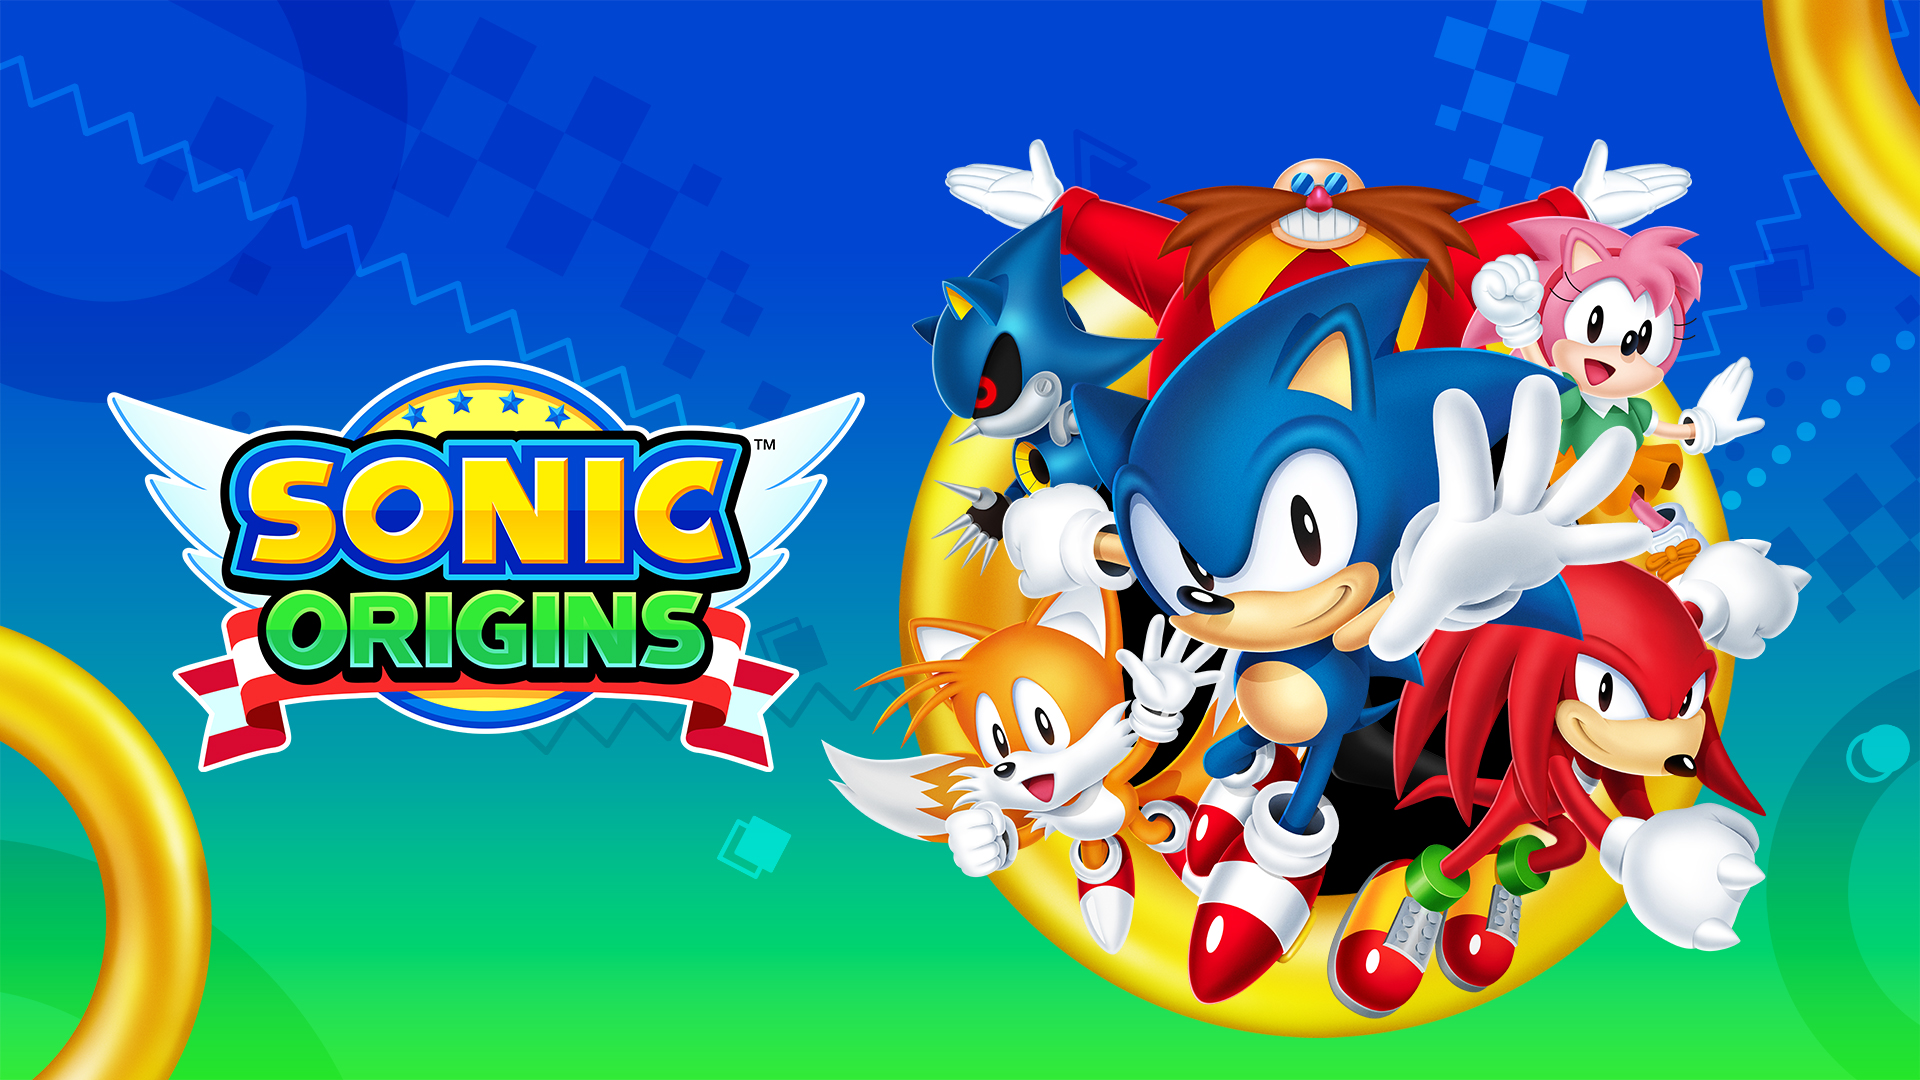 Sonic Origins wprowadza w czerwcu 4 gry Sonic the Hedgehog na konsole i komputery PC